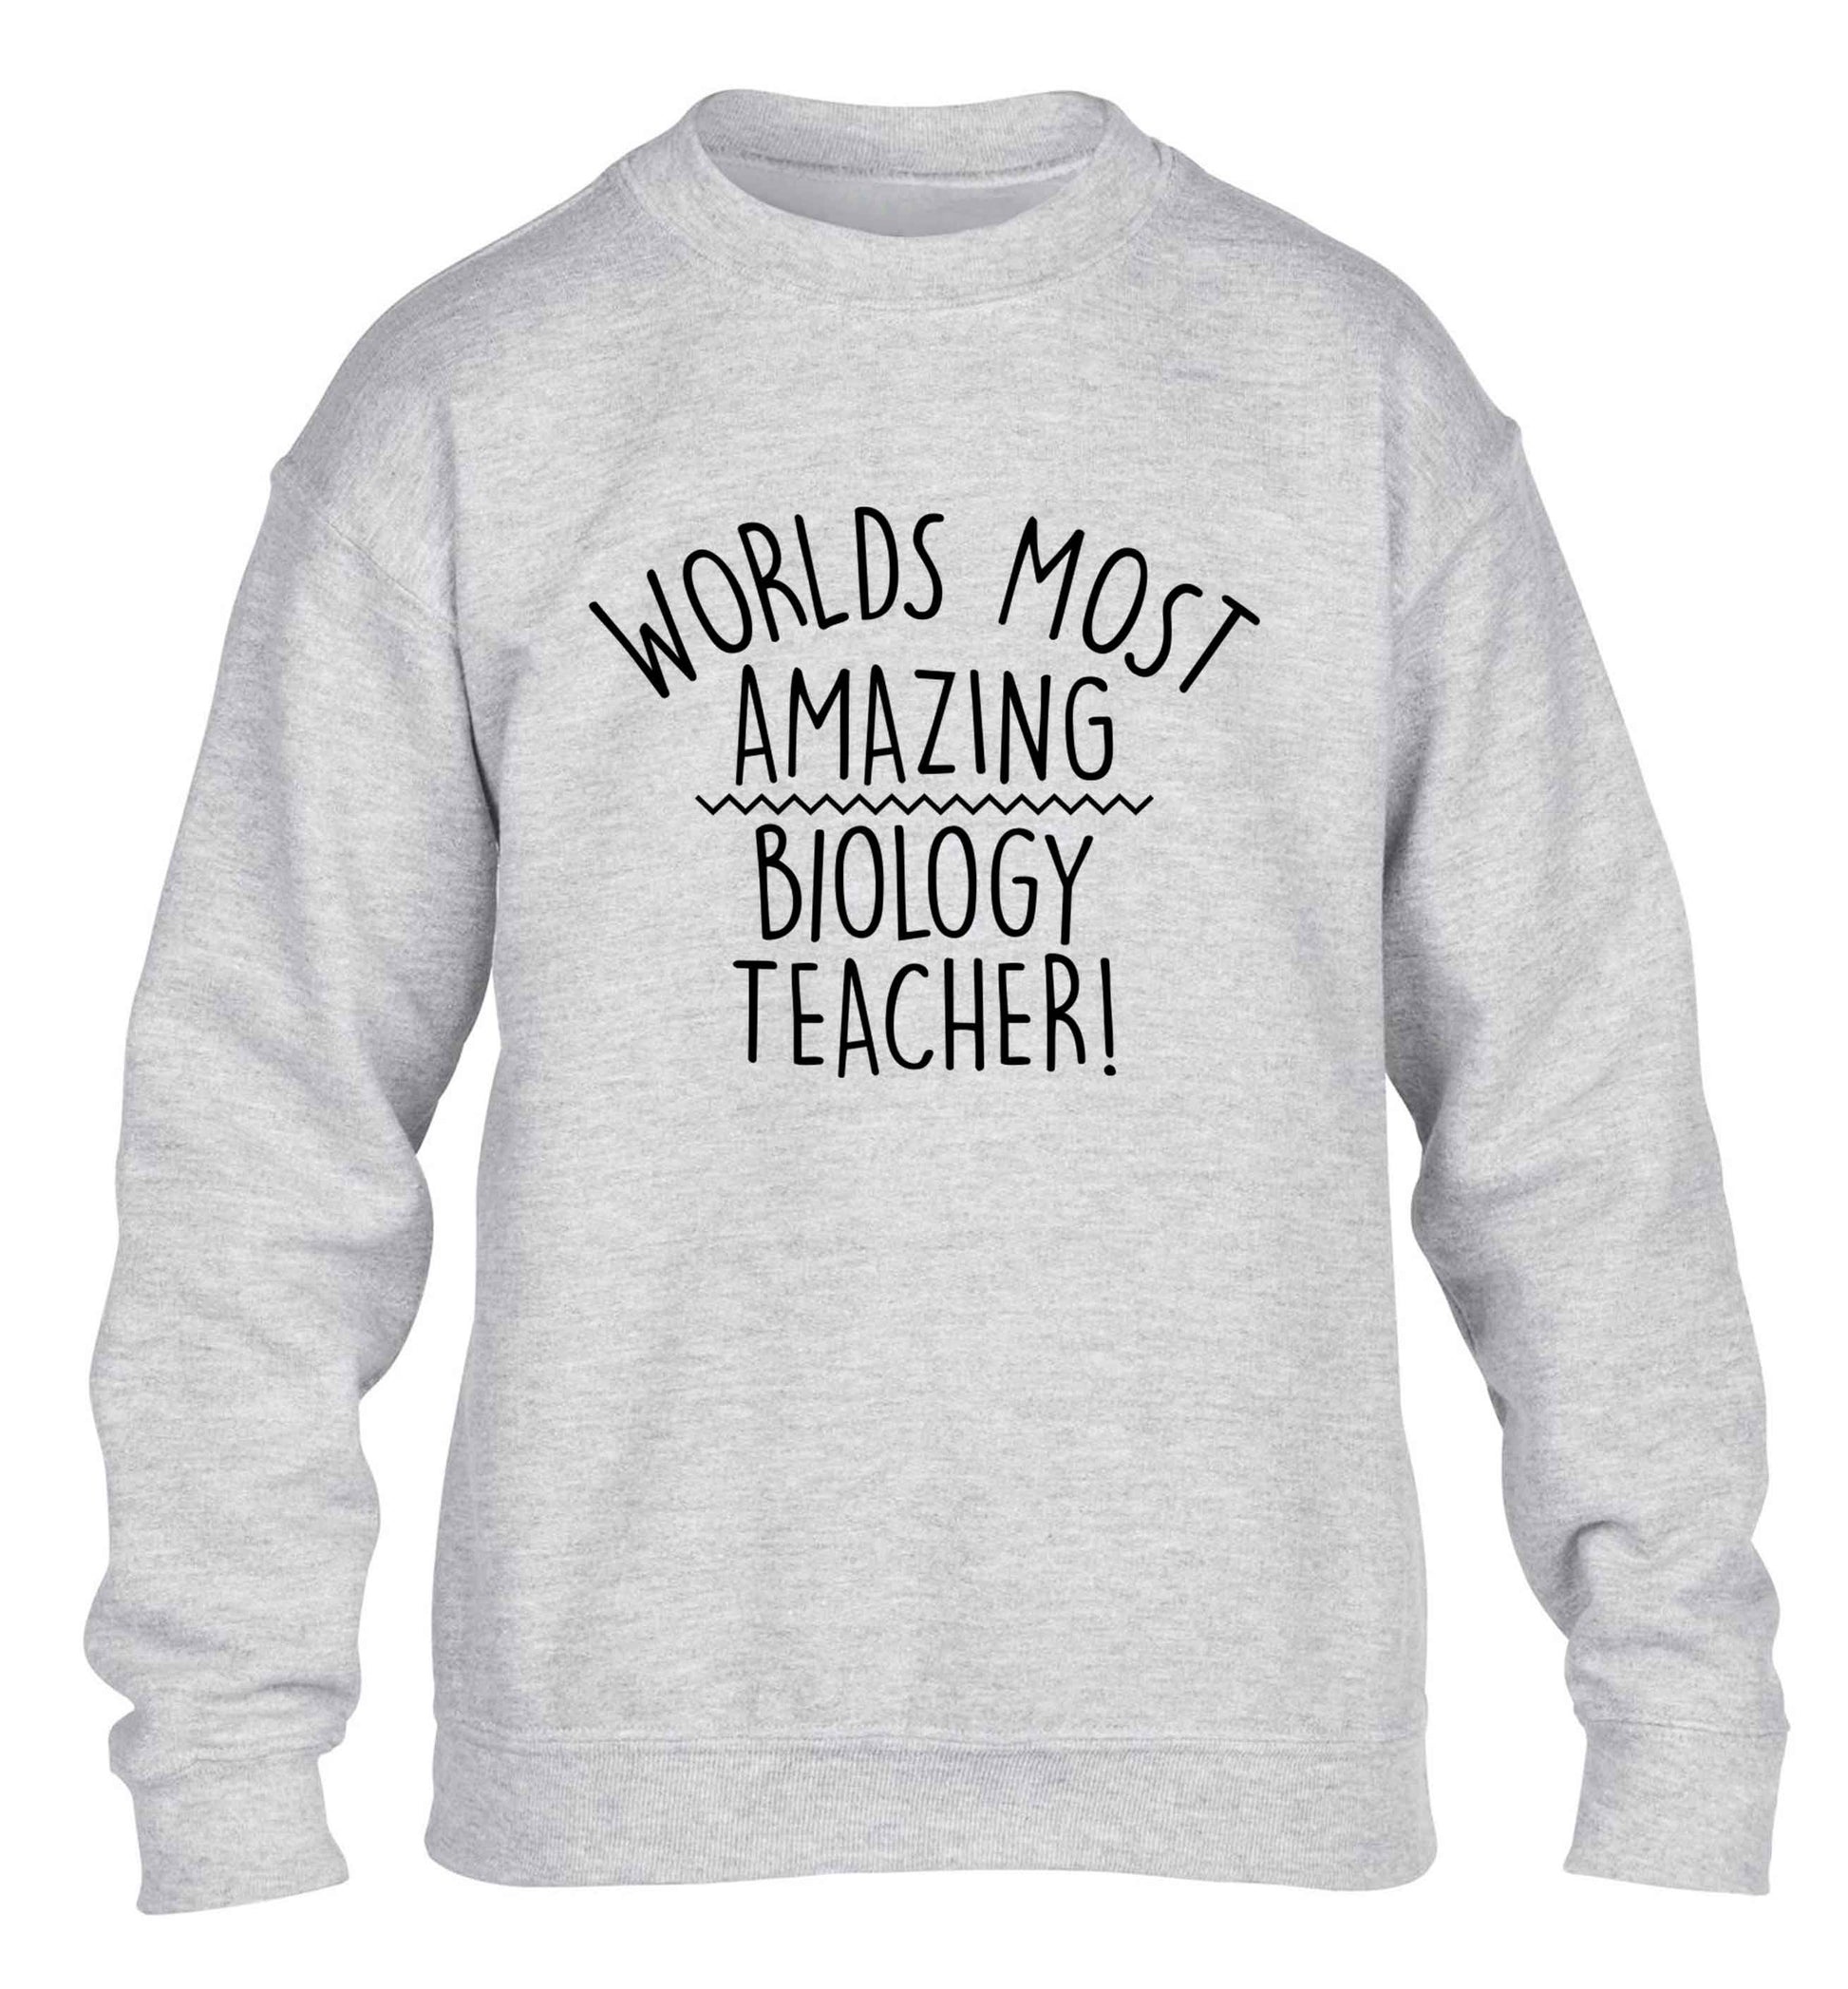 Worlds most amazing biology teacher children's grey sweater 12-13 Years